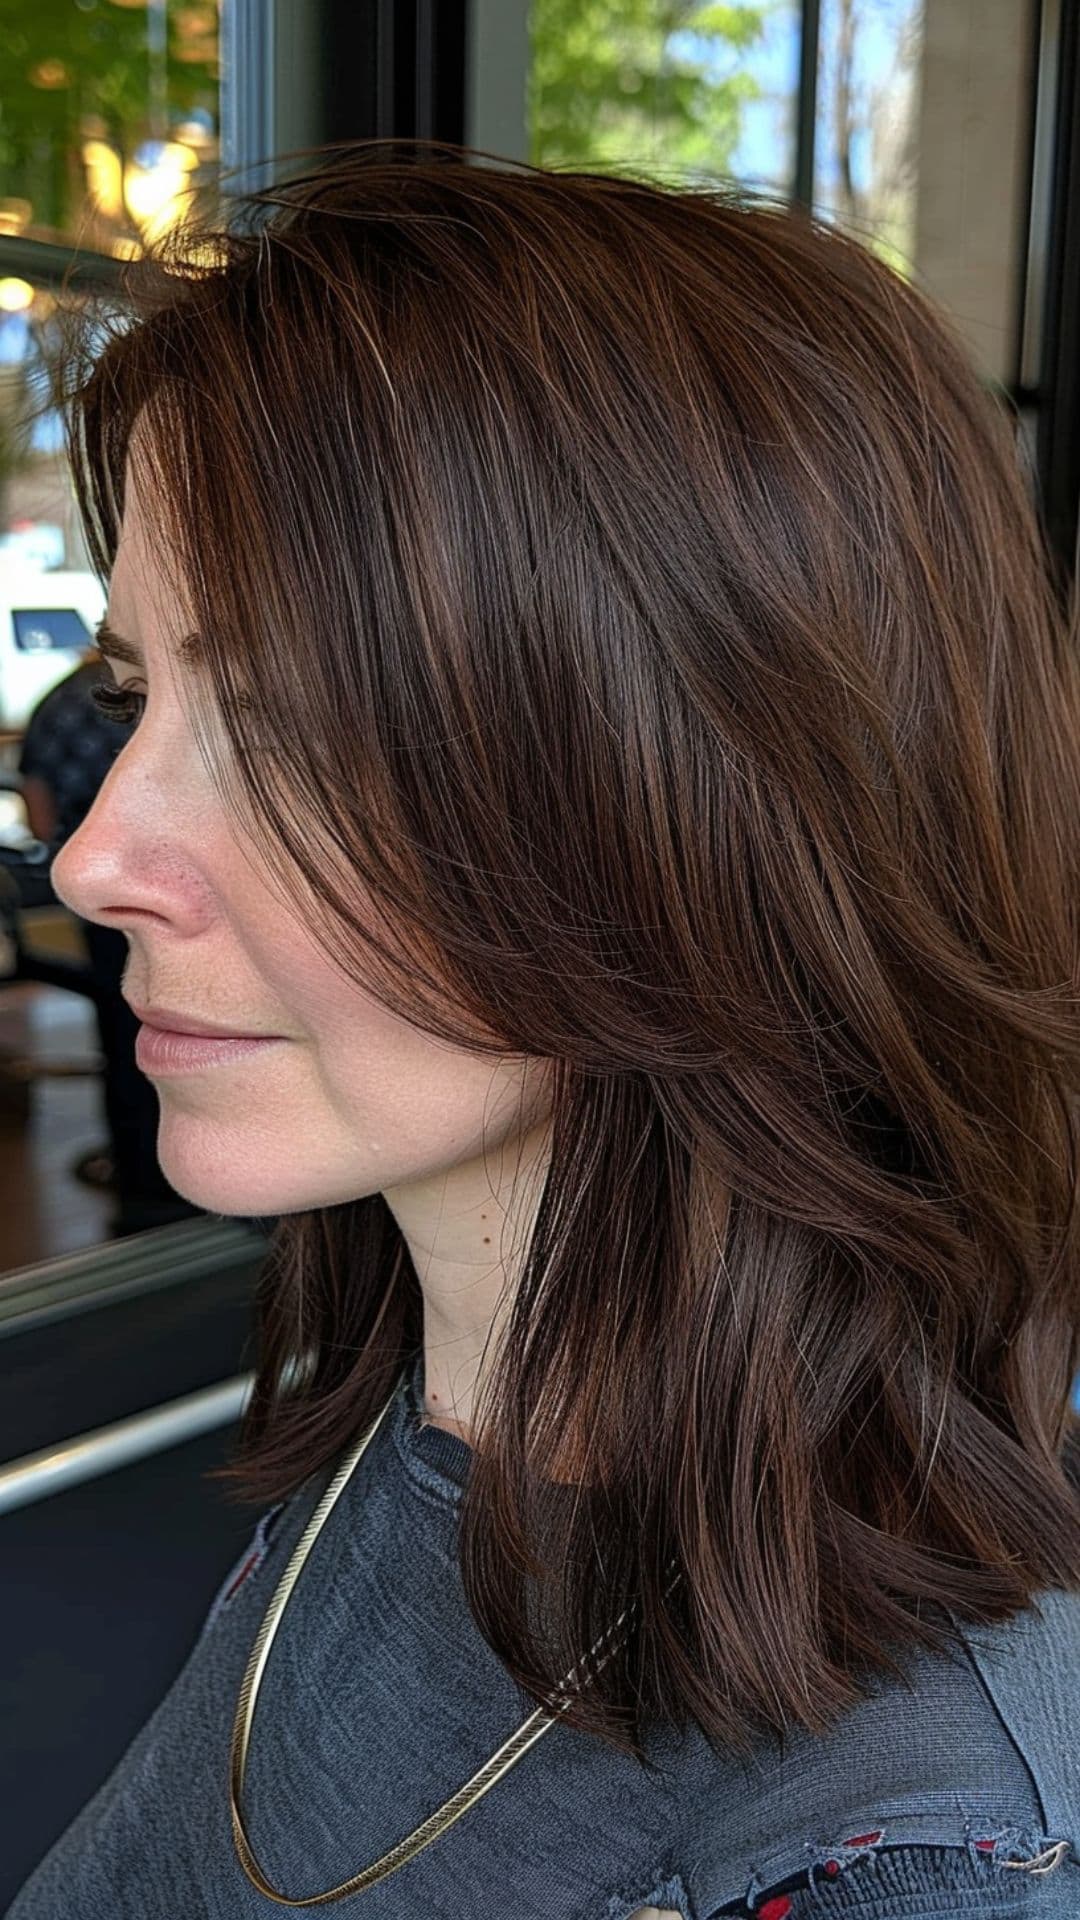 A woman modelling a dark chocolate brown hair.